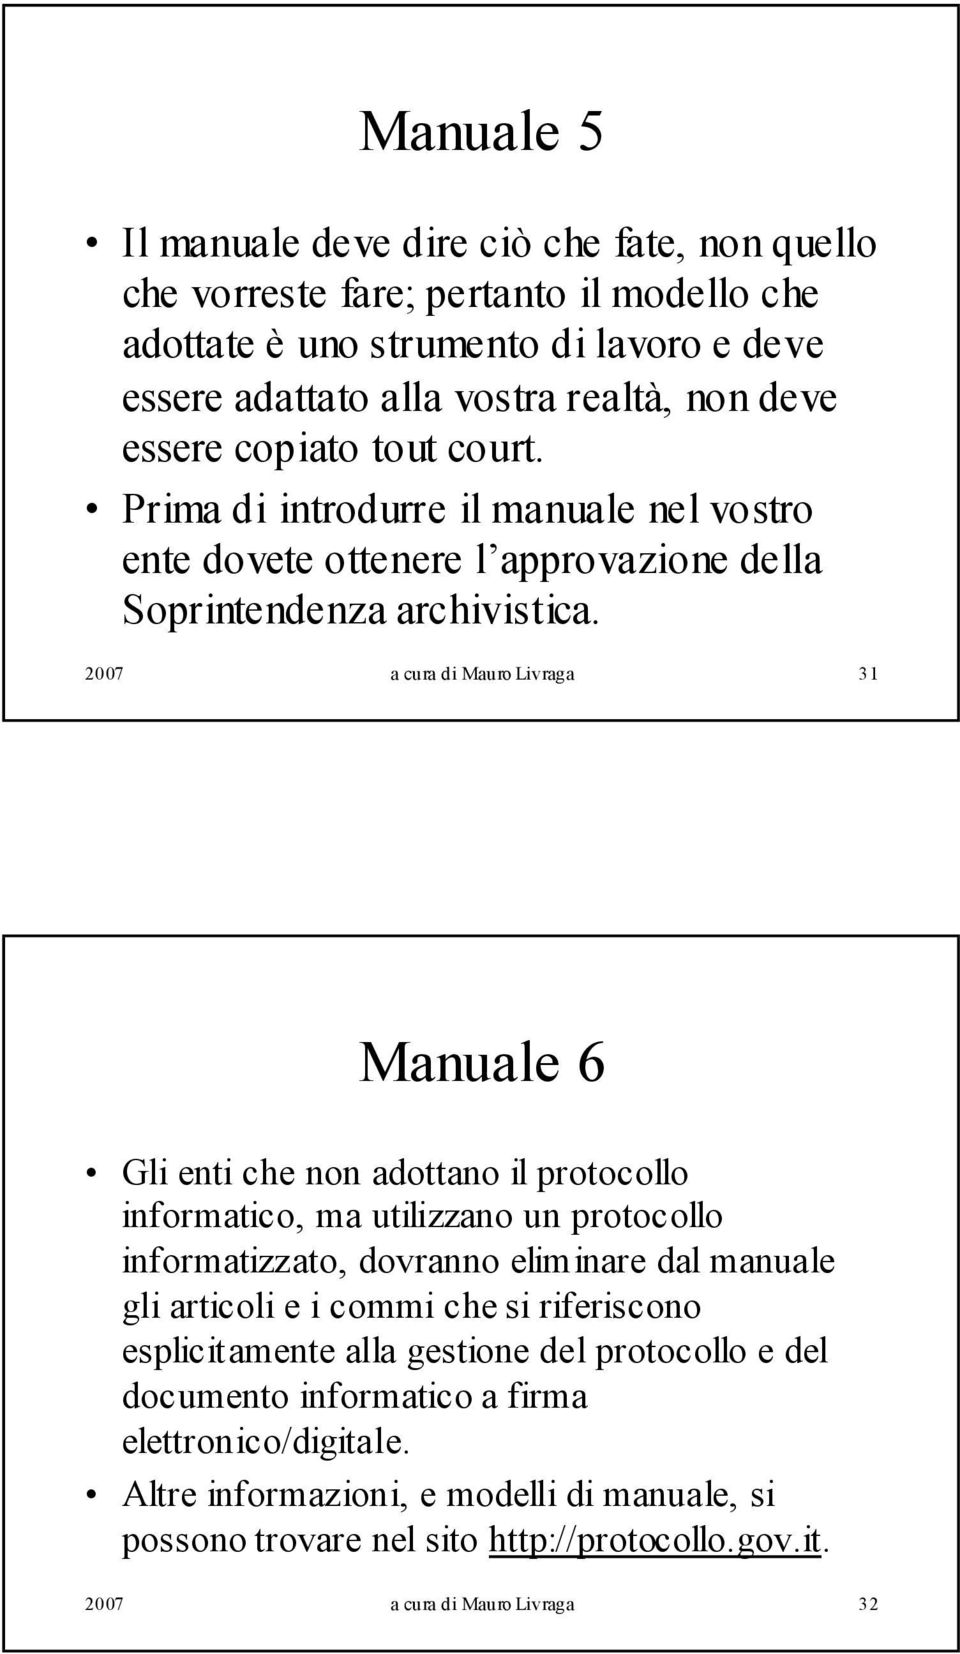 2007 a cura di Mauro Livraga 31 Manuale 6 Gli enti che non adottano il protocollo informatico, ma utilizzano un protocollo informatizzato, dovranno eliminare dal manuale gli articoli e i